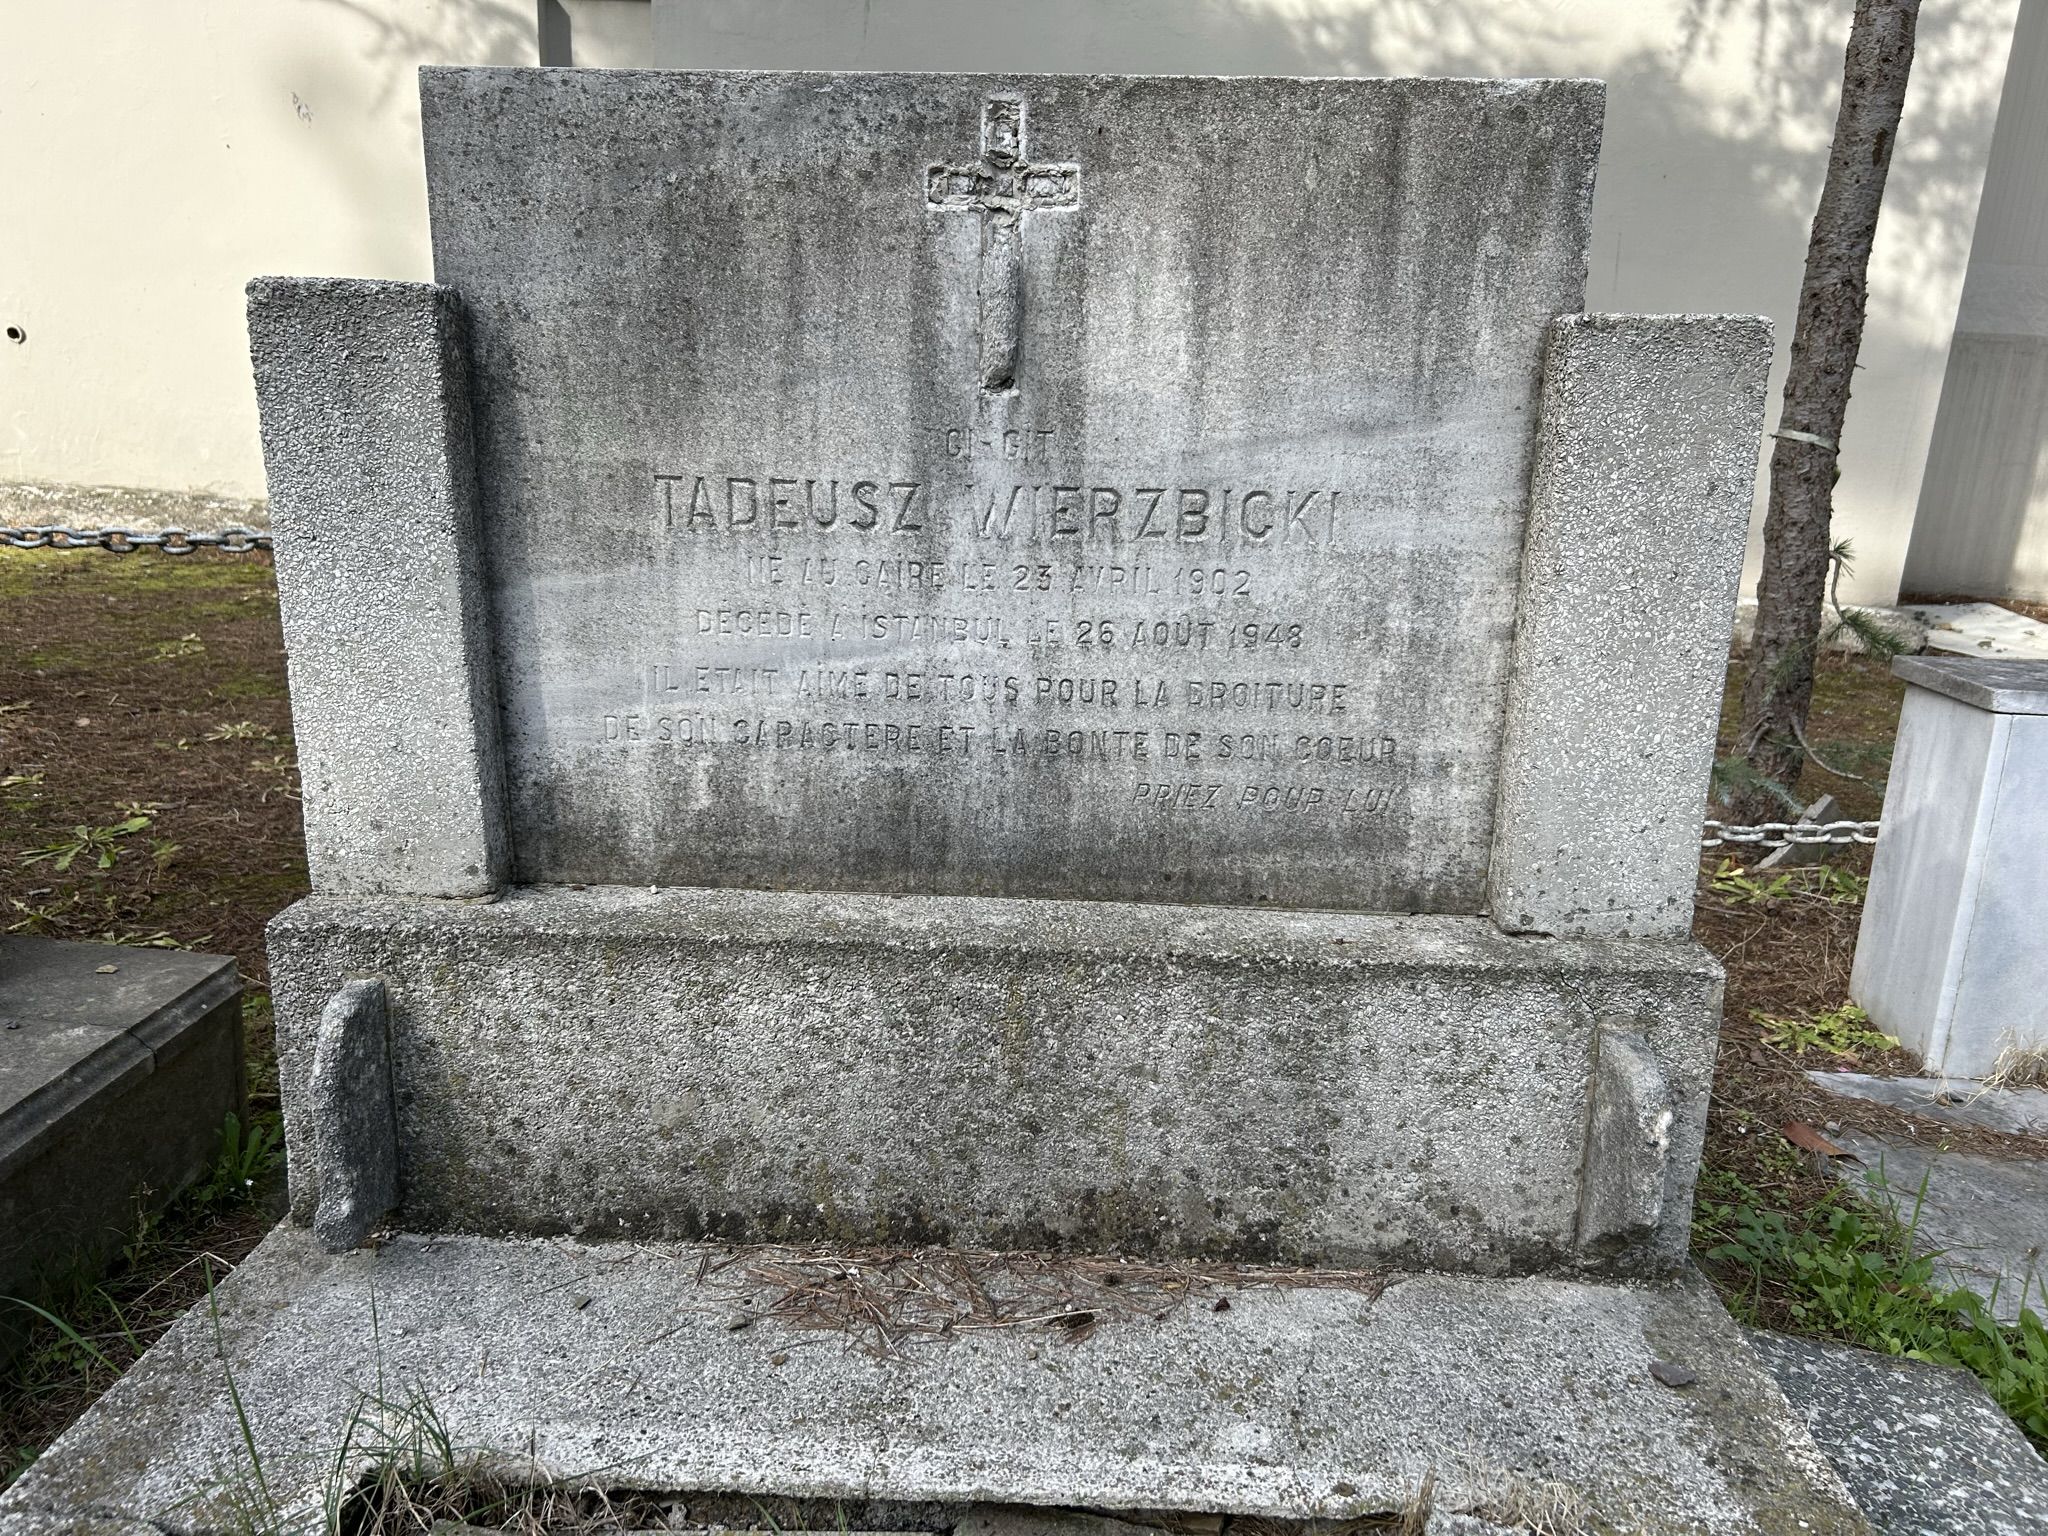 Inscription from the tombstone of Tadeusz Wierzbicki, Catholic cemetery in Feriköy